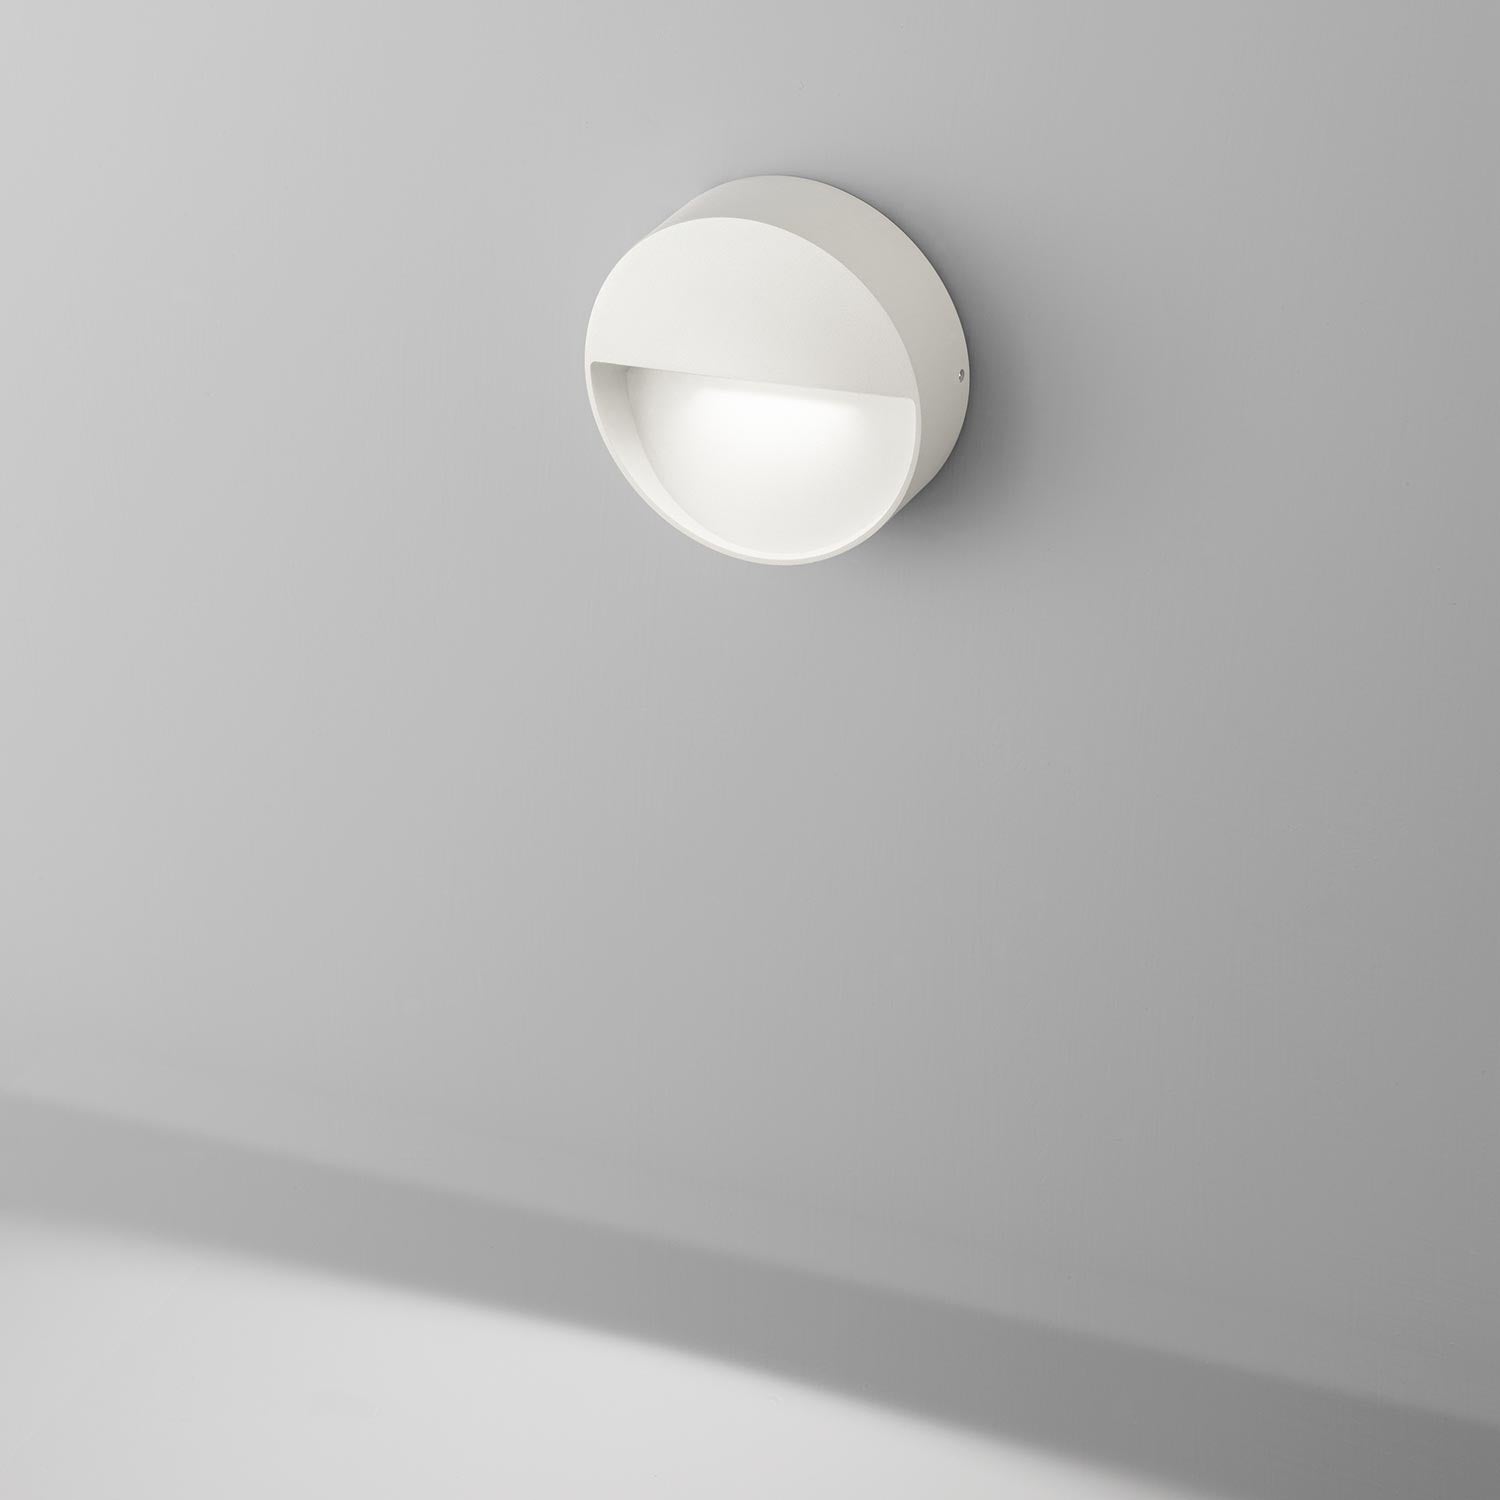 Billede af Vigo væglampe fra Eggerlicht